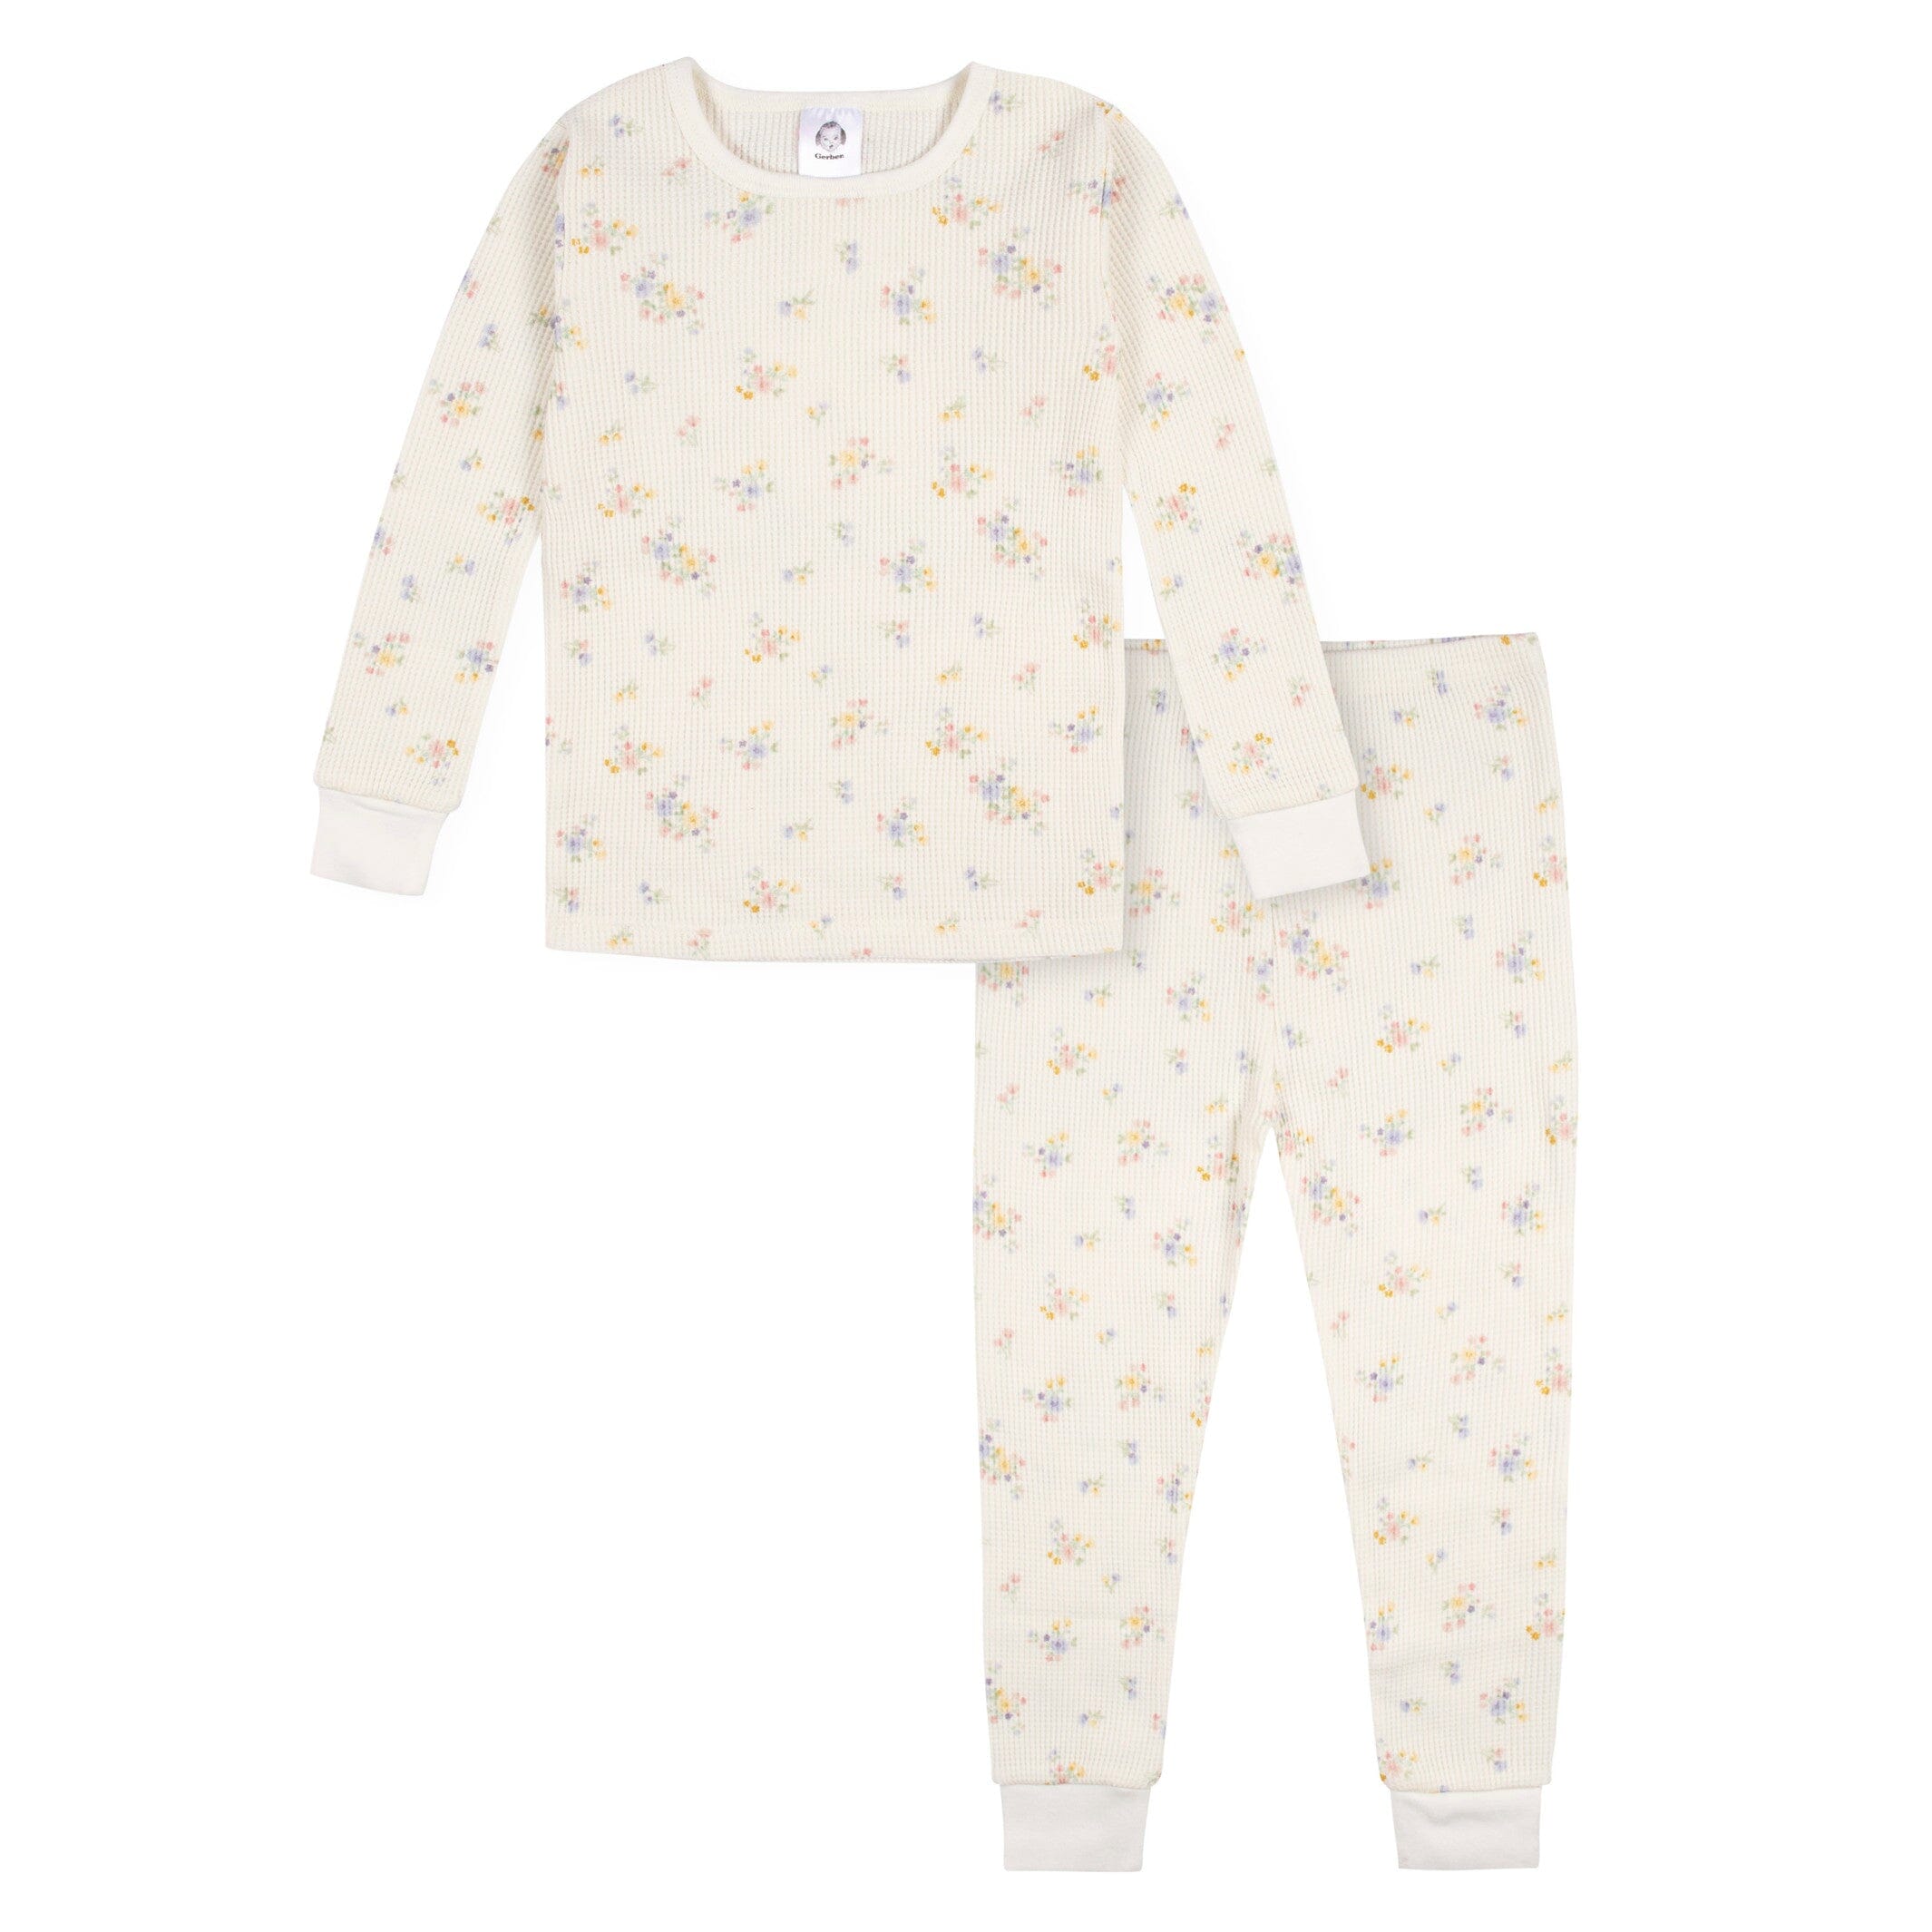 2-Piece Infant & Toddler Girls Ivory Floral Snug Fit Pajama Set ...